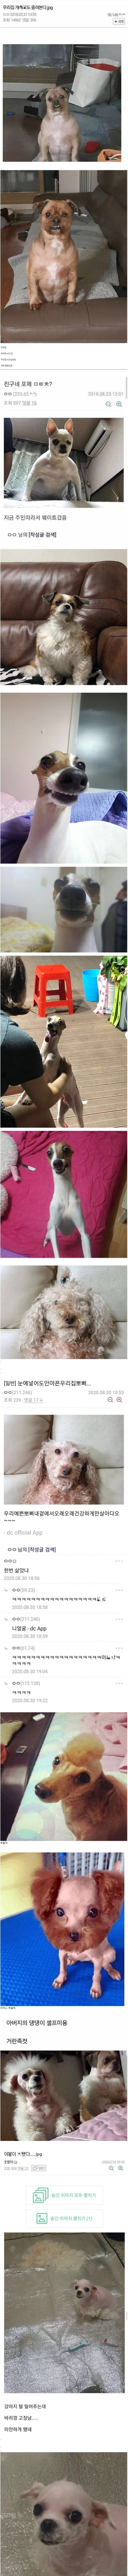 레전드 강아지 인증 사진들